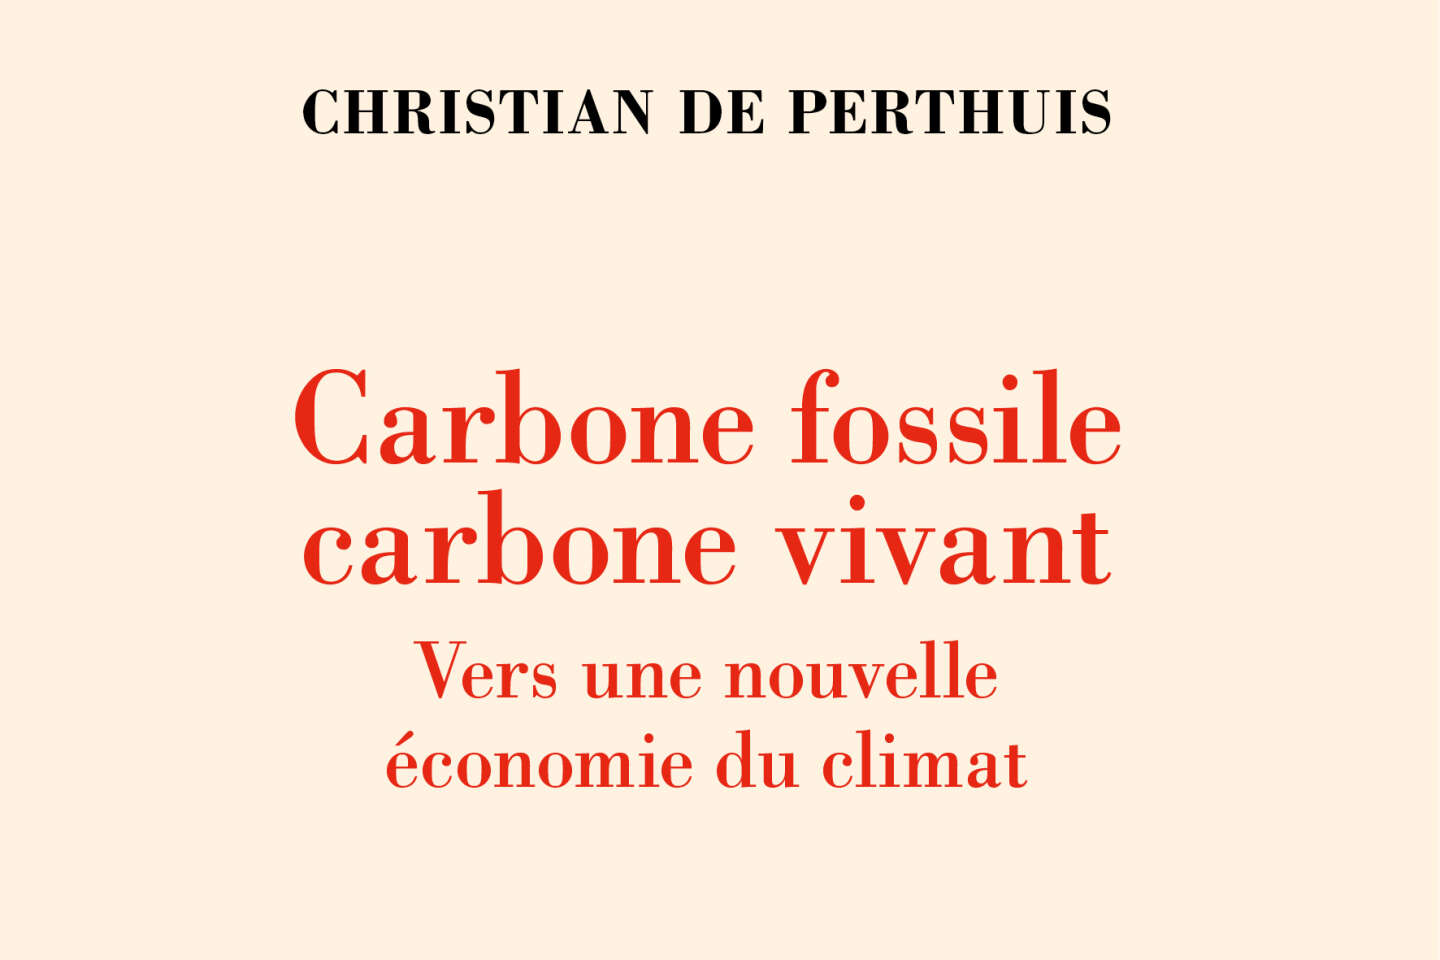 « Carbone fossile, carbone vivant » : repenser l’abondance des ressources et leur rareté